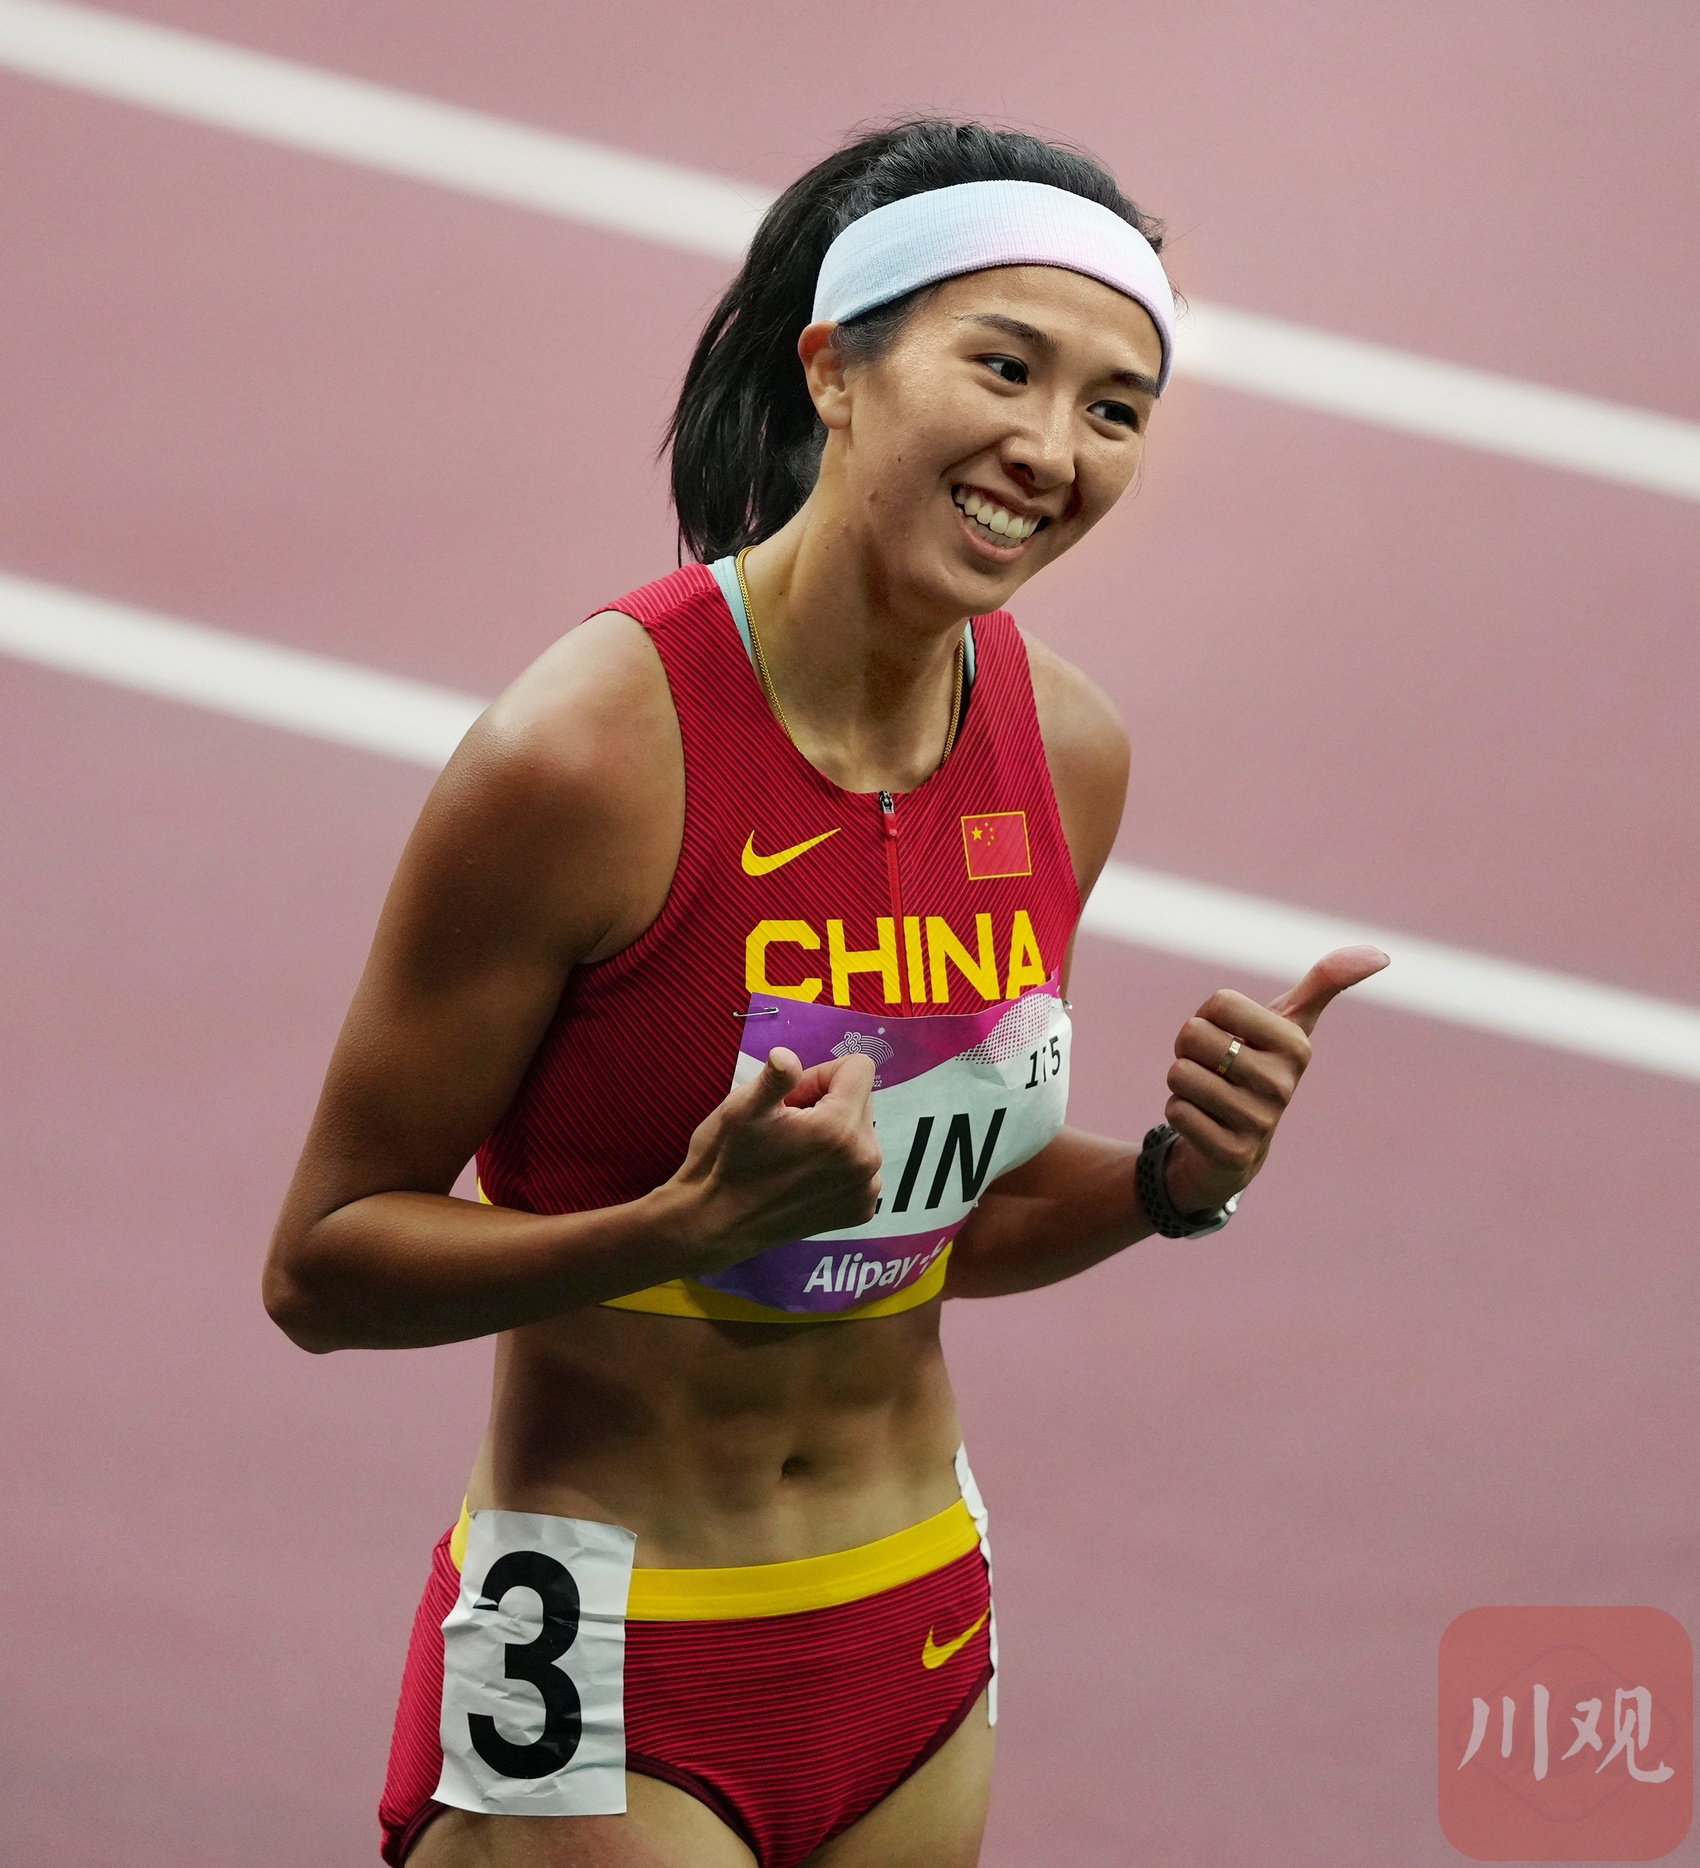 “跨欄女孩”吳豔妮:想當劉翔 我絕不能比日本選手差 - 雪花新闻